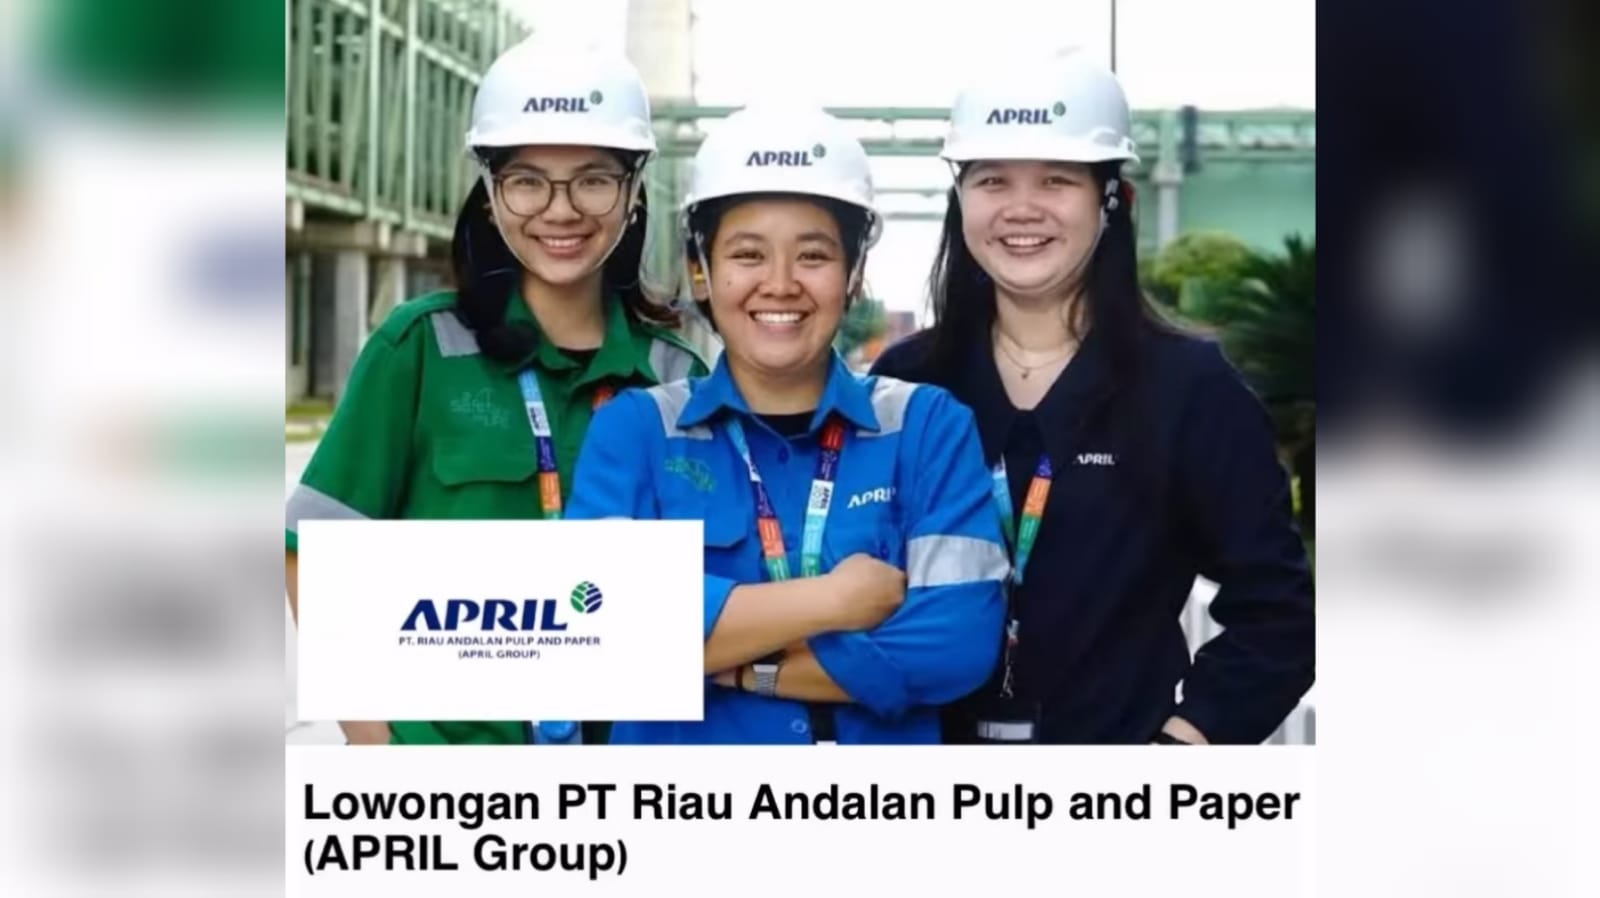 Lowongan Kerja Perusahaan Pulp dan Kertas Terbesar PT Riau Andalan Pulp and Paper (APRIL Group)